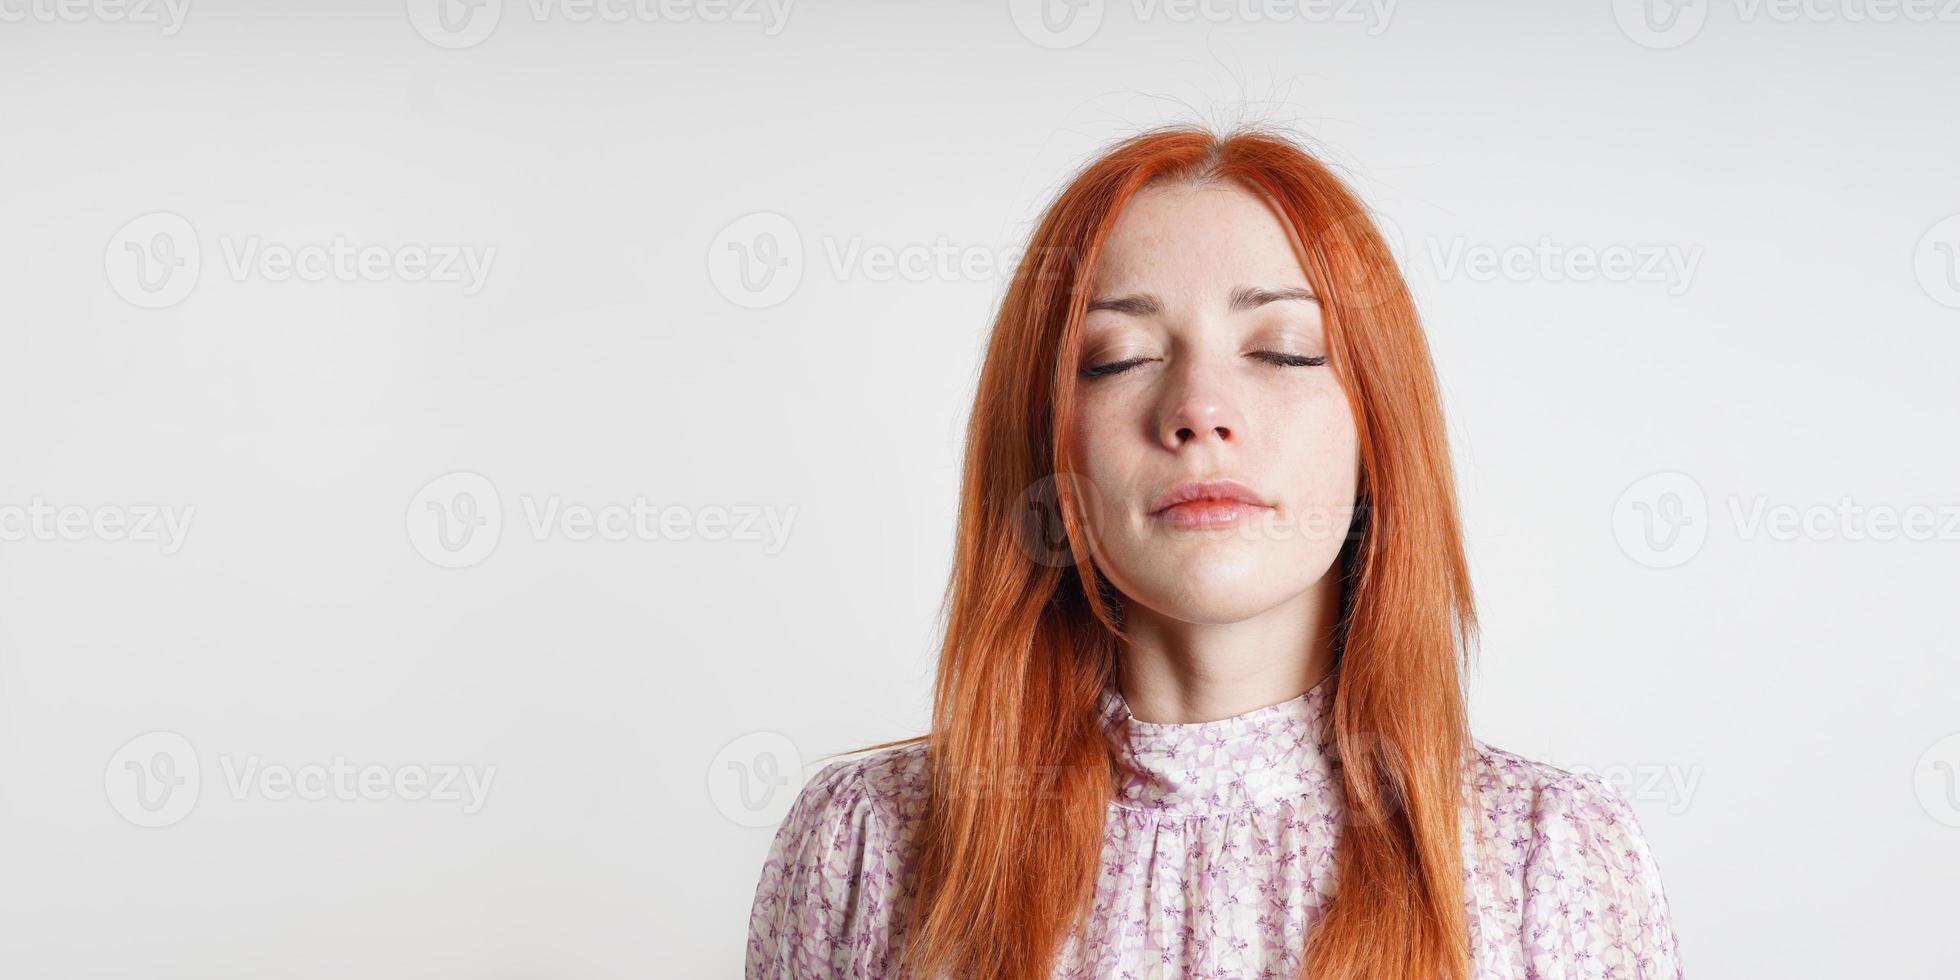 kalmte vredig vrouw mediteert met Gesloten ogen - zelfreflectie opmerkzaamheid en zelfzorg foto